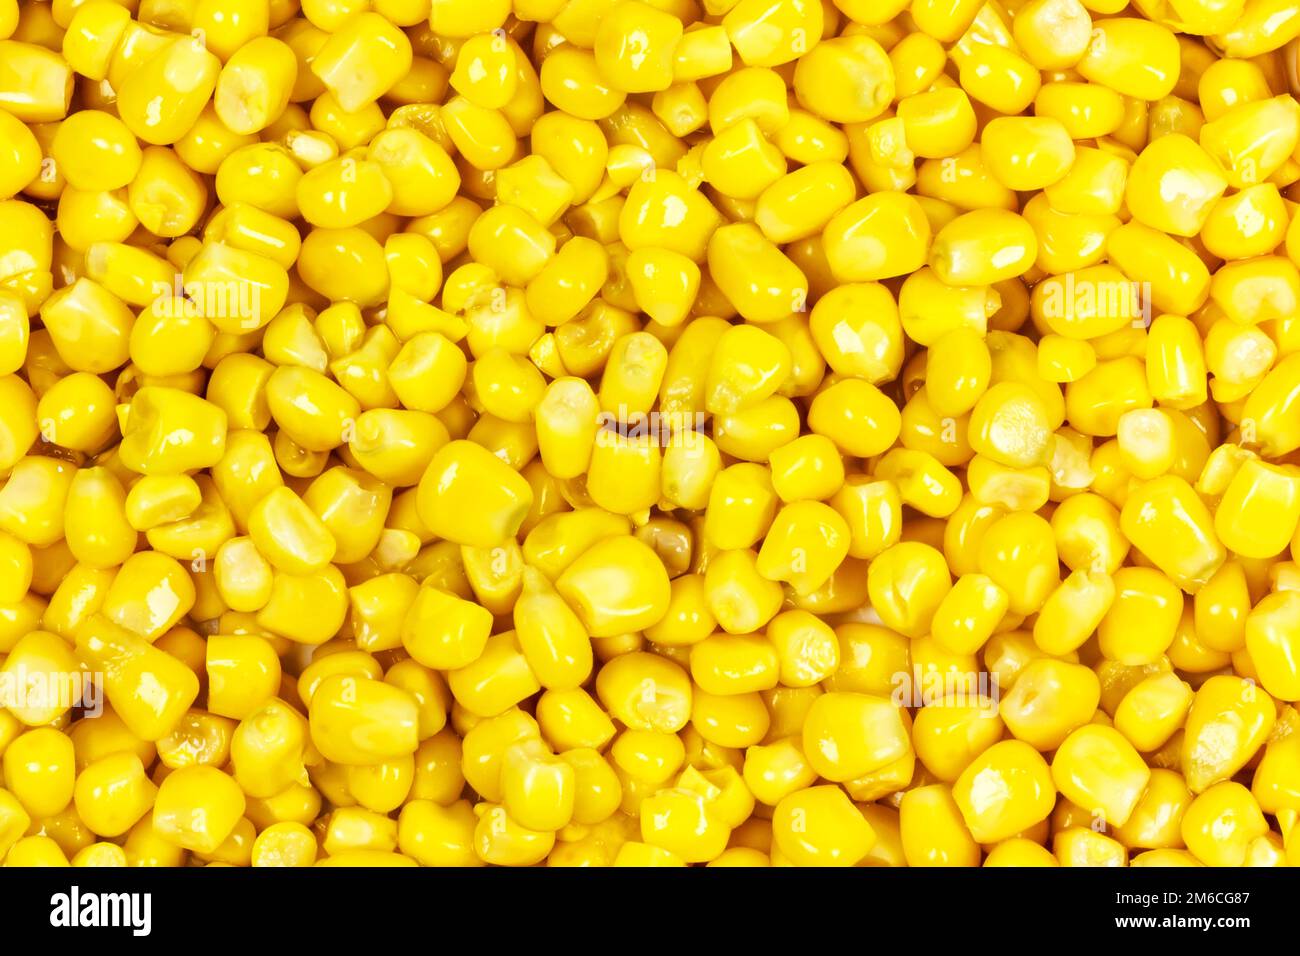 Cerrojos de maíz en toda la superficie de la imagen Foto de stock